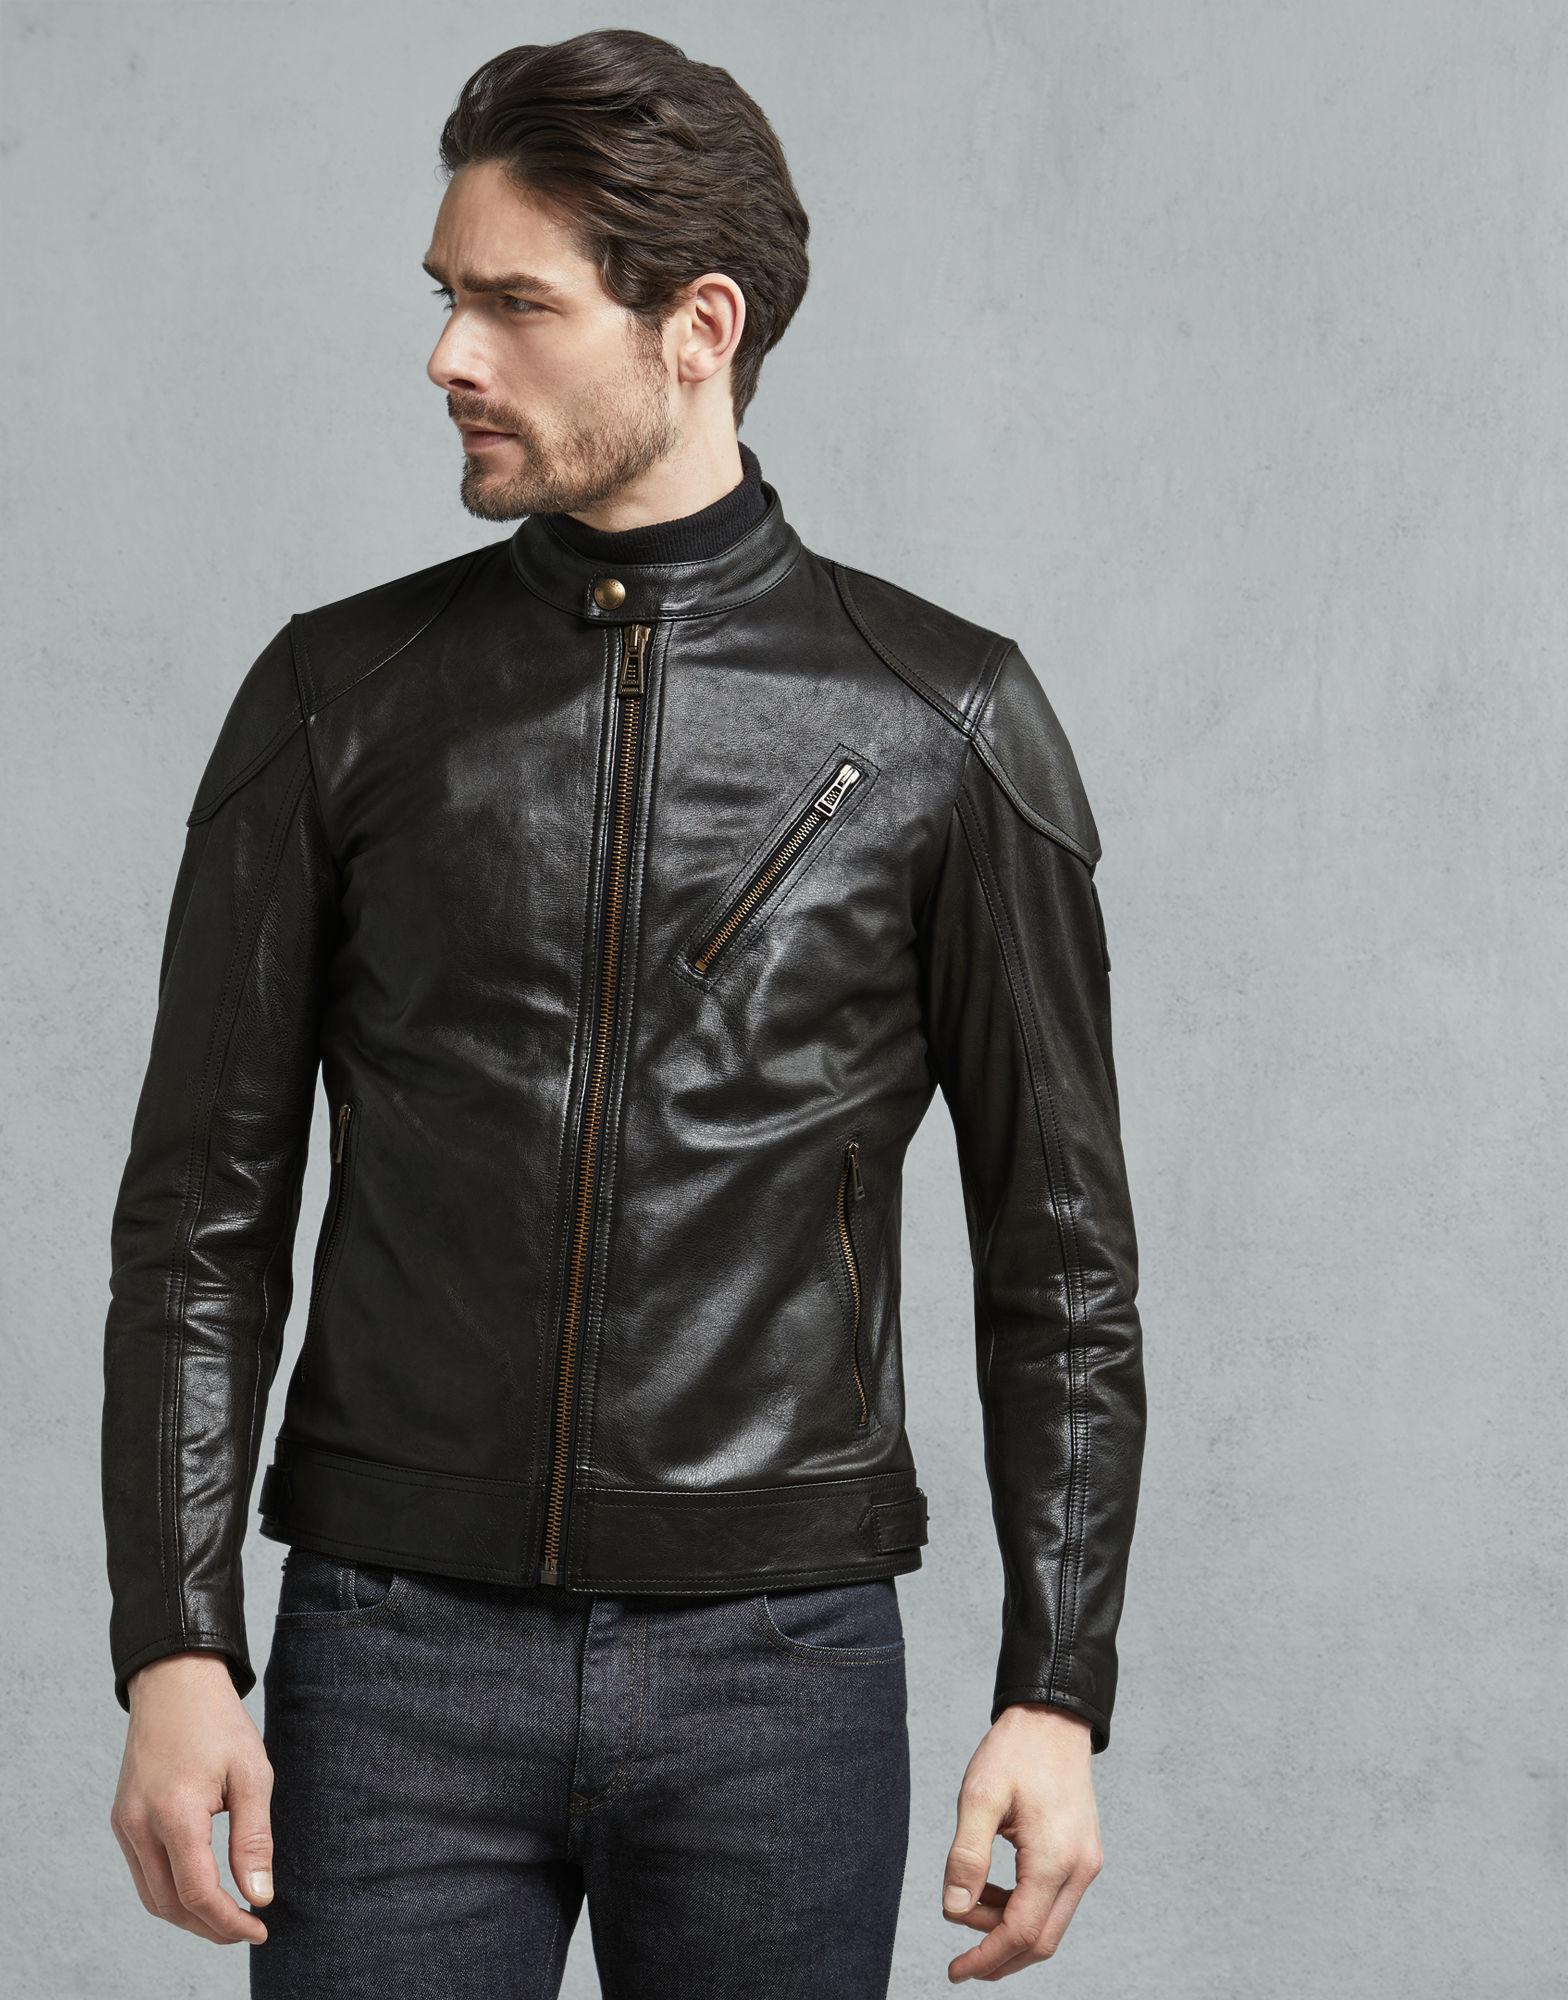 إنتاج موقعك بدقة belstaff blouson leather jacket - stoprestremember.com